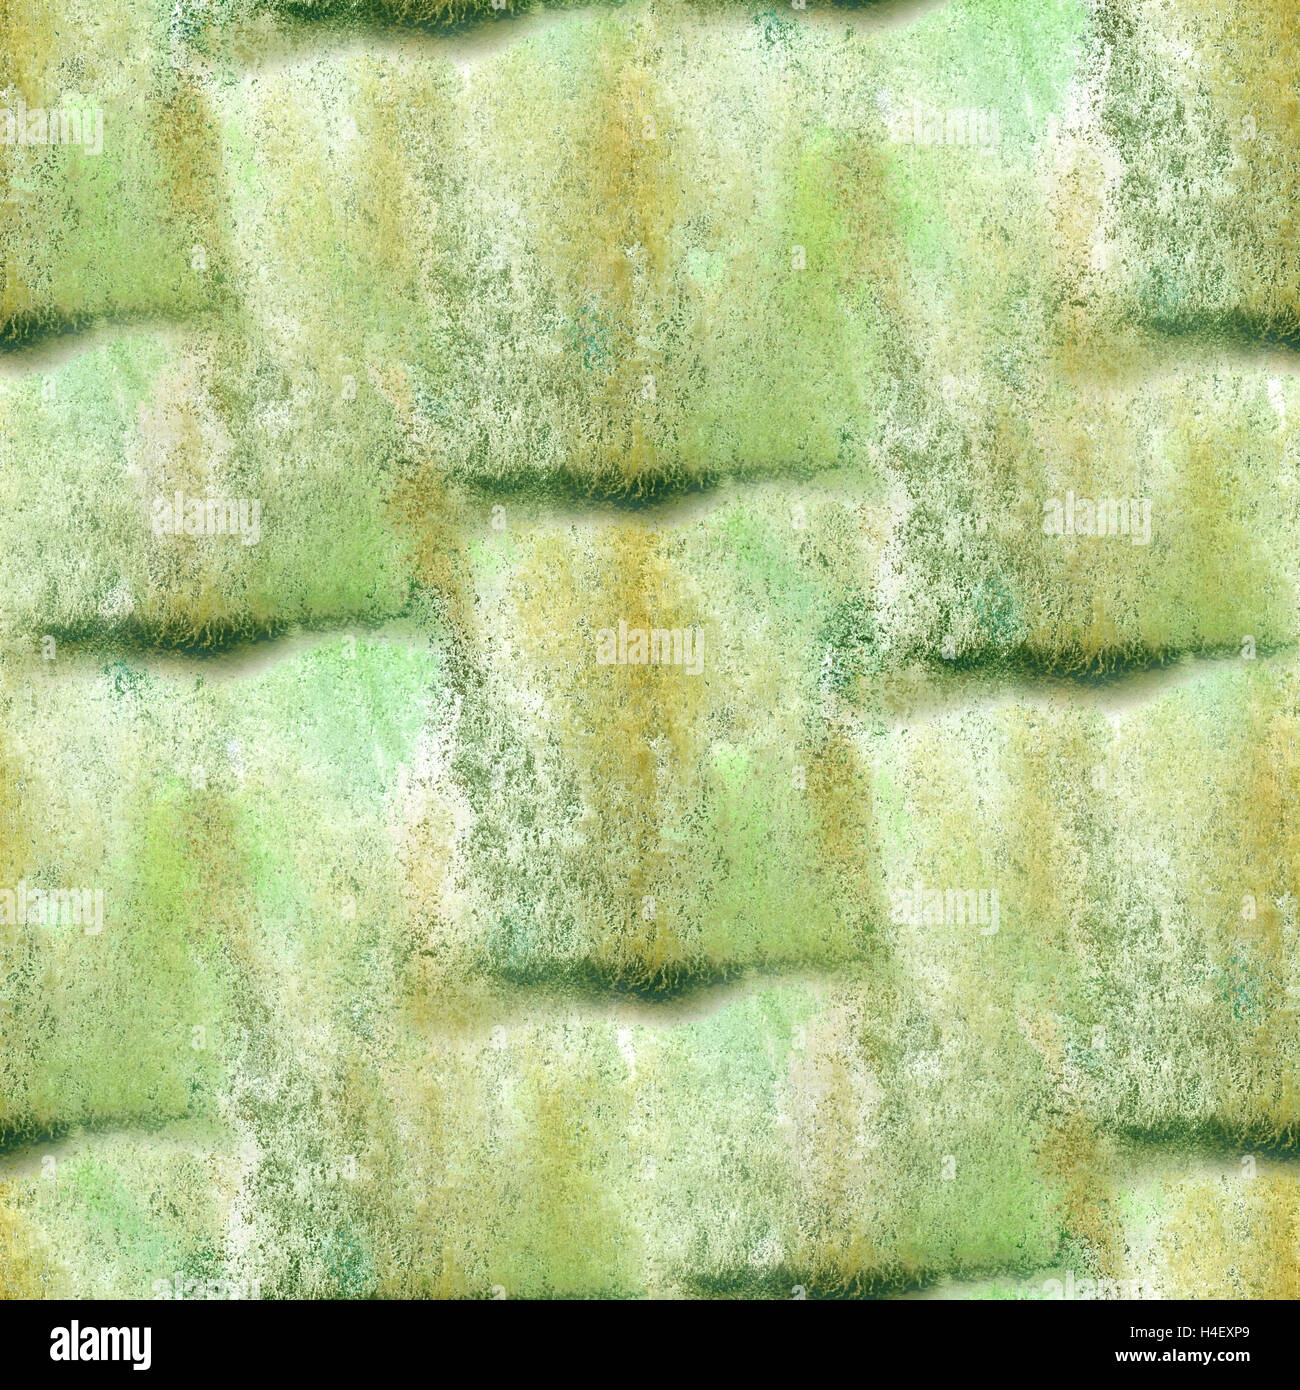 Aquarell grün nahtlose Textur für Ihre Business-Tapete-Kunst Stockfoto